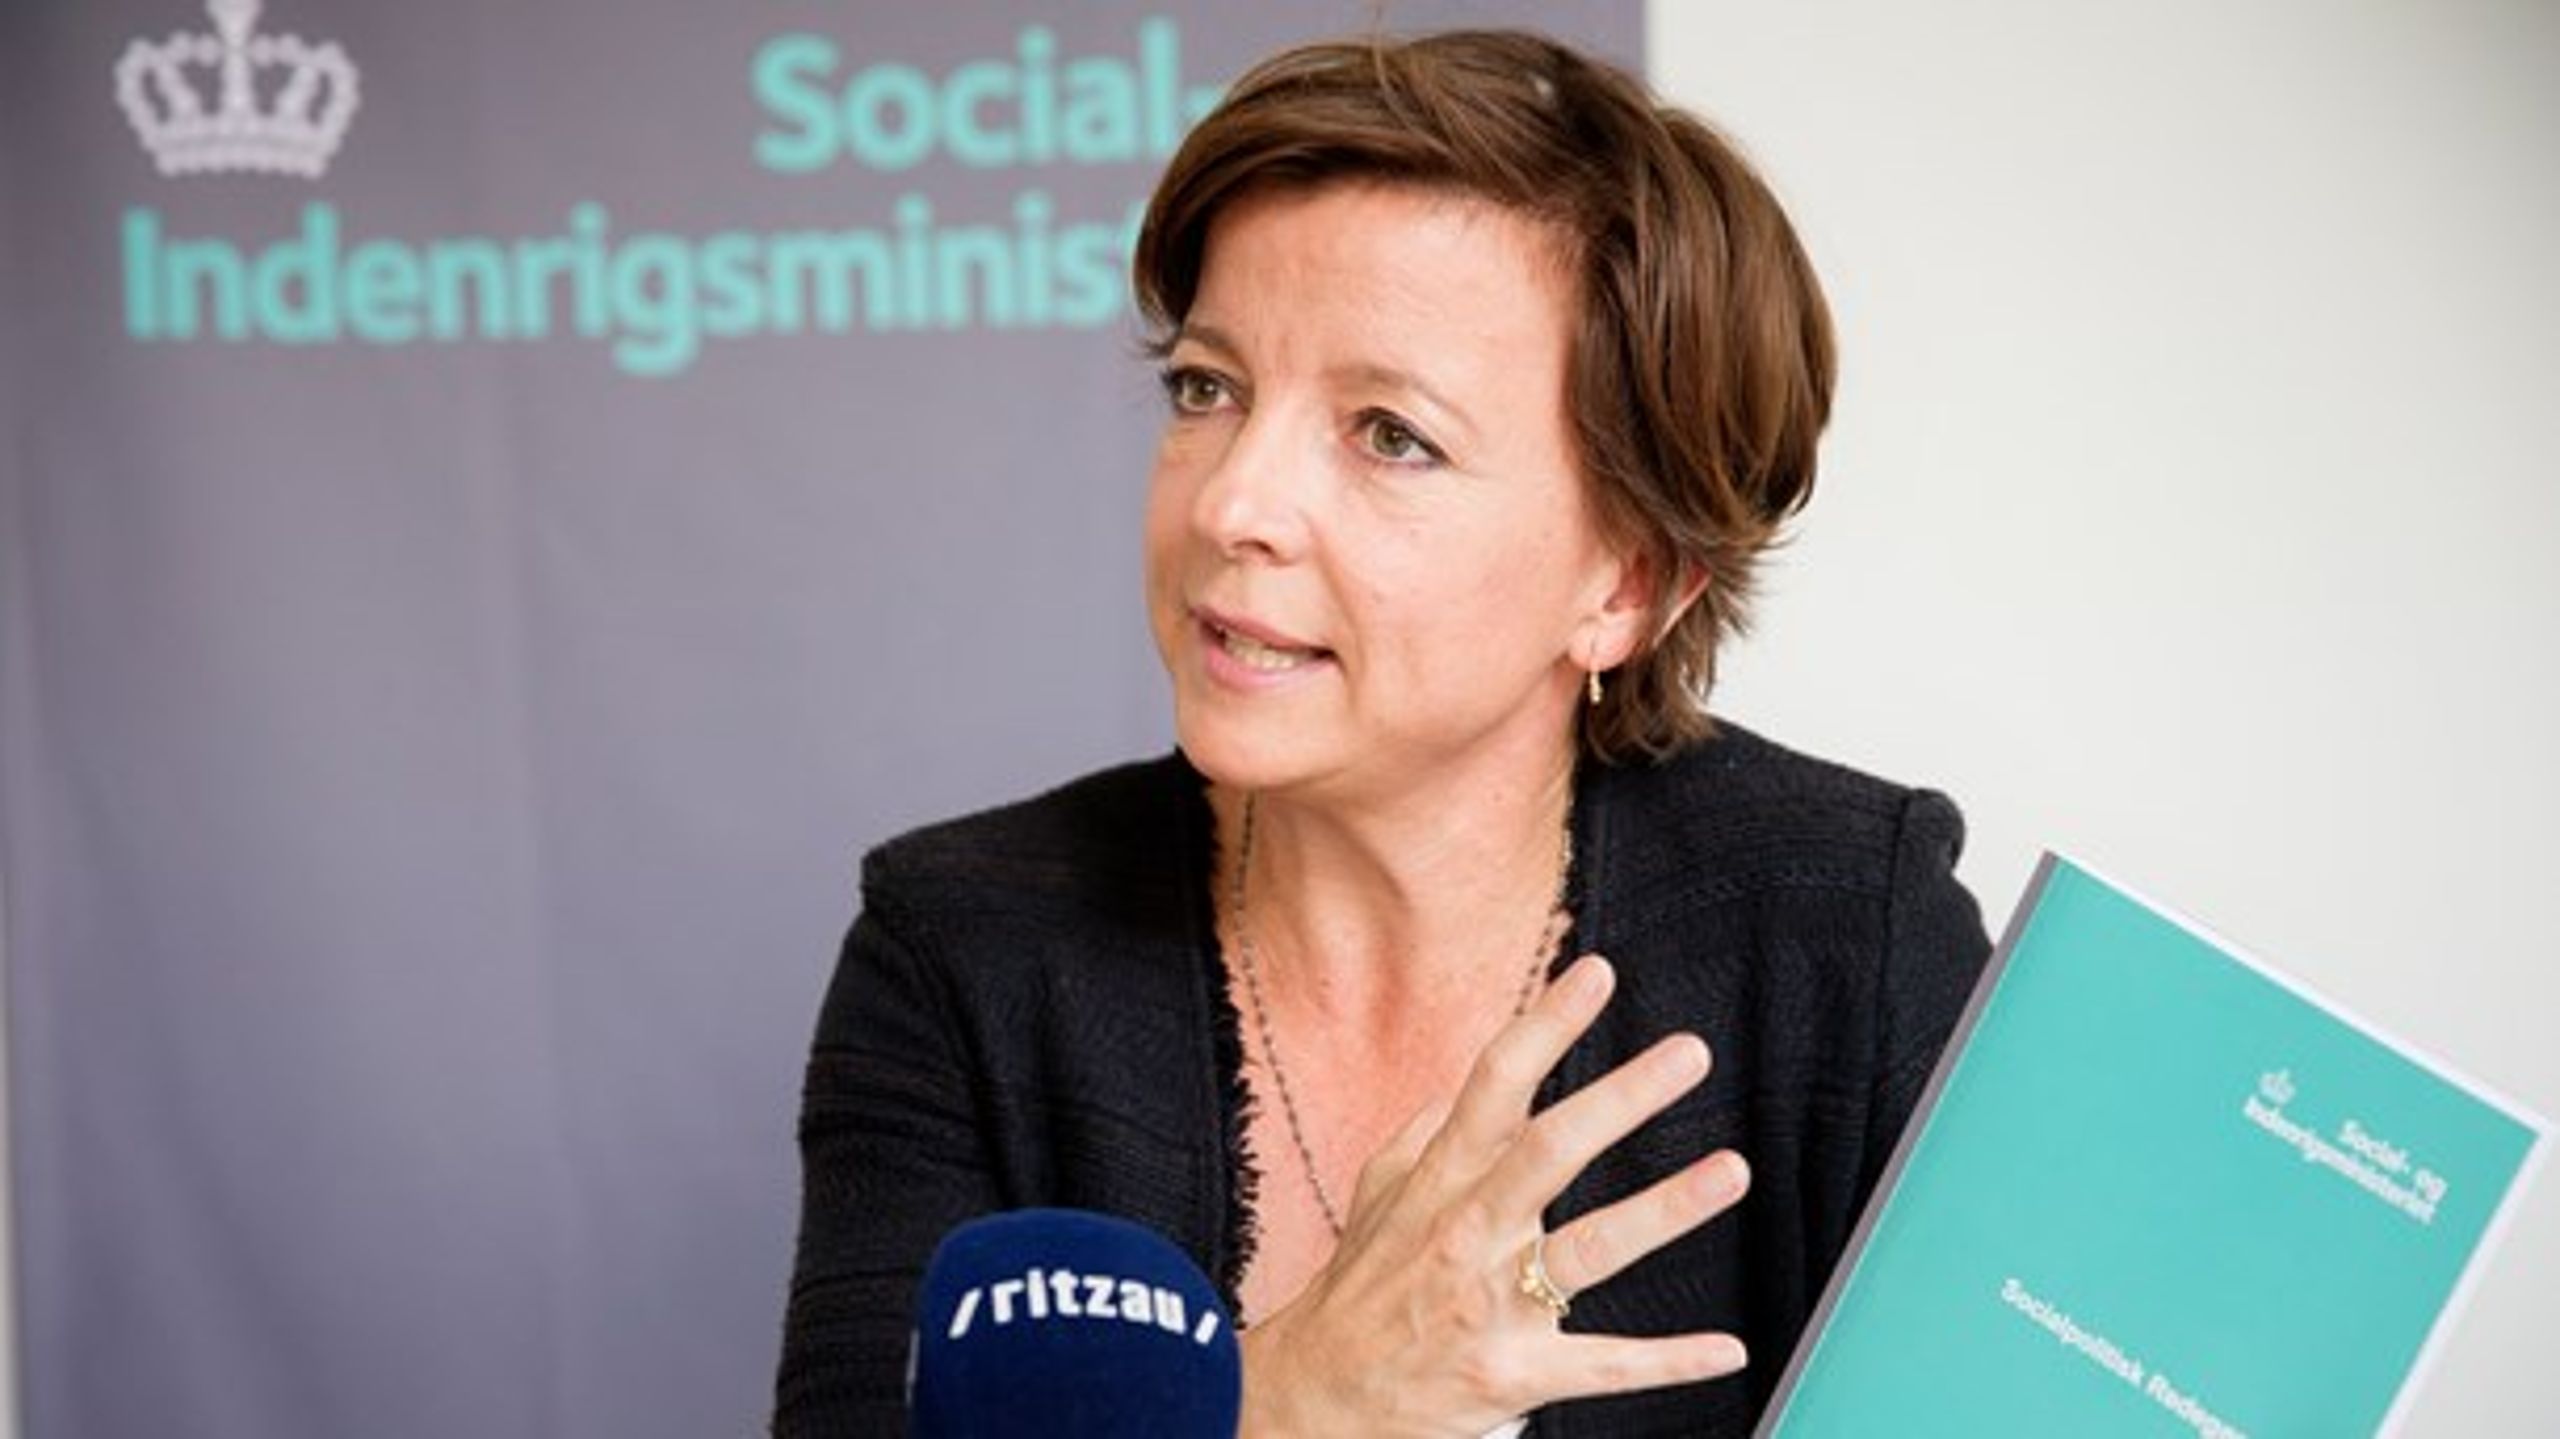 Mandag blev regeringens nye&nbsp;socialpolitiske redegørelse præsenteret af socialminister Karen Ellemann (V).&nbsp;